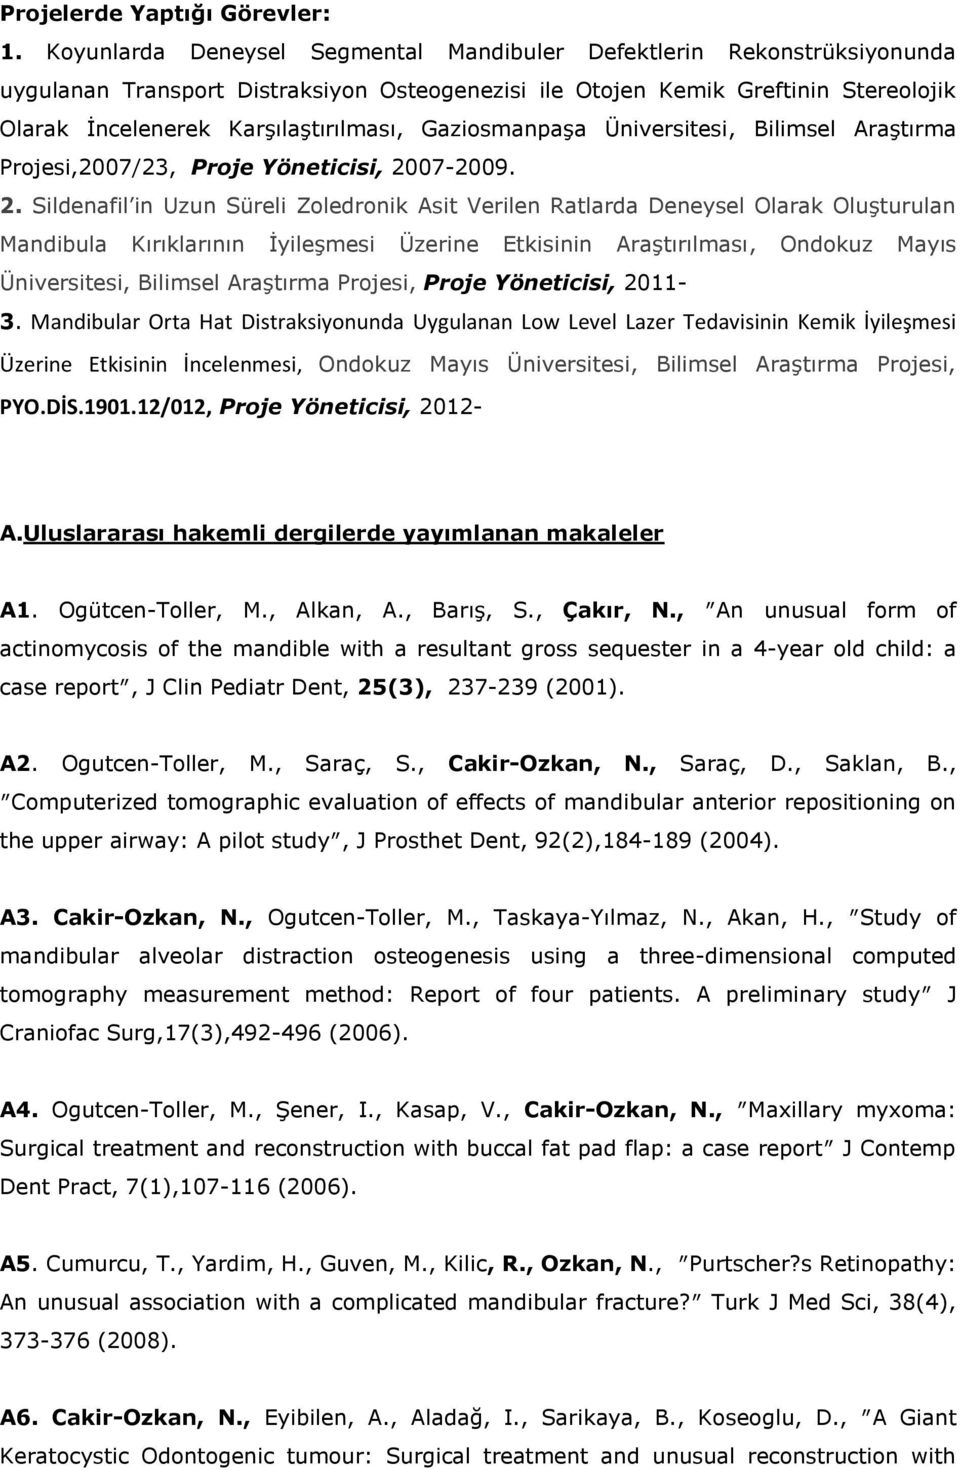 Gaziosmanpaşa Üniversitesi, Bilimsel Araştırma Projesi,2007/23, Proje Yöneticisi, 20